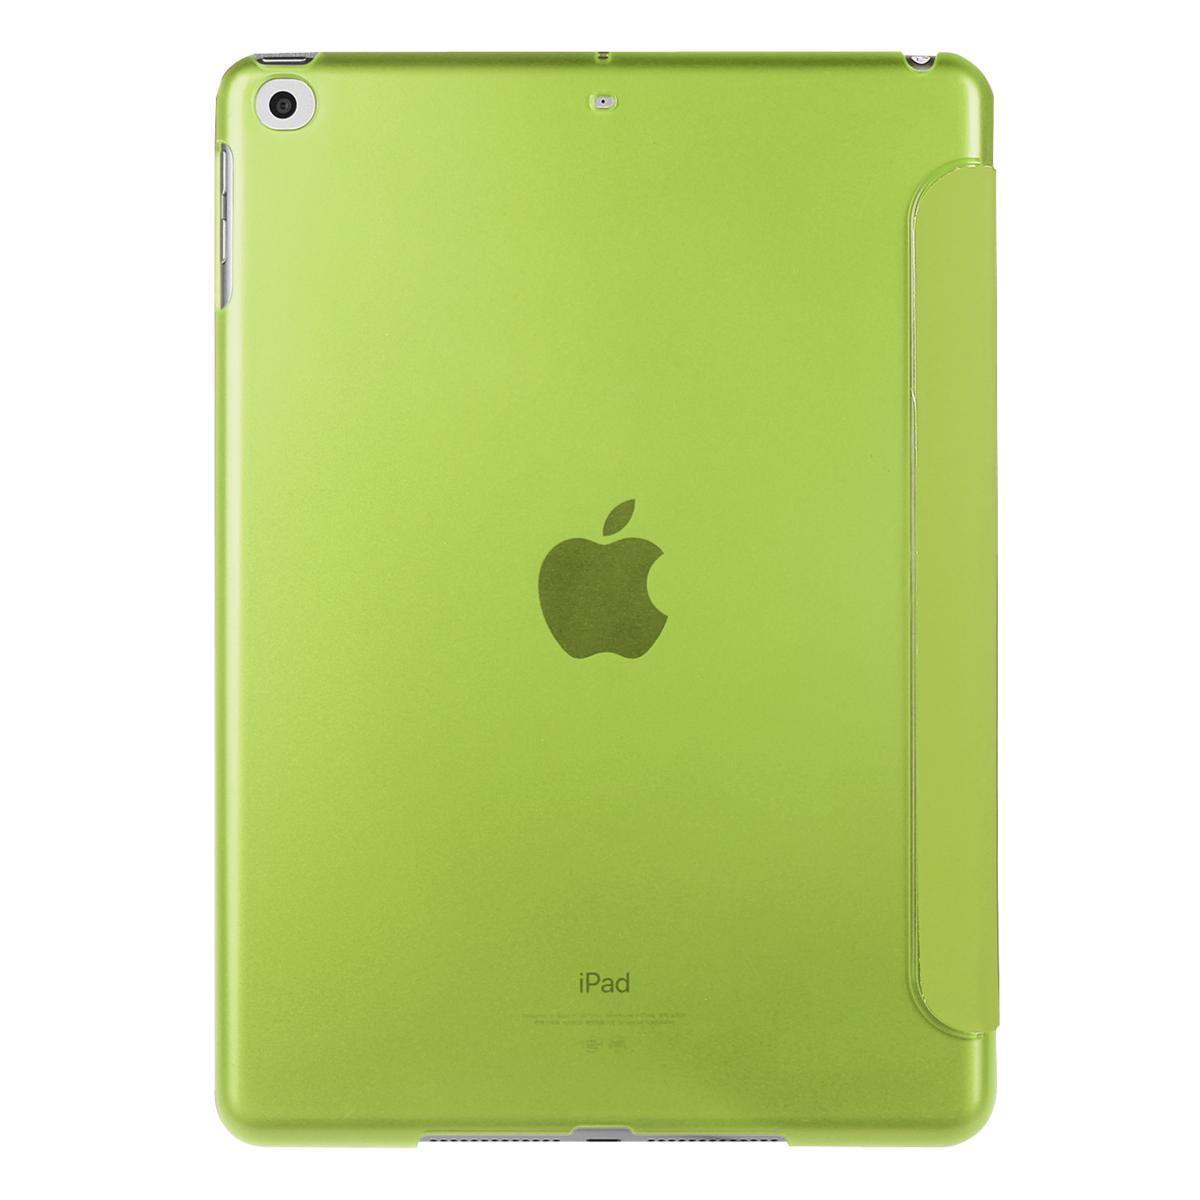 iPad ケース iPad5 / iPad6 / iPad Air1 / iPad Air2 兼用 三つ折スマートカバー PUレザー アイパッド カバー スタンド機能 グリーン_画像3